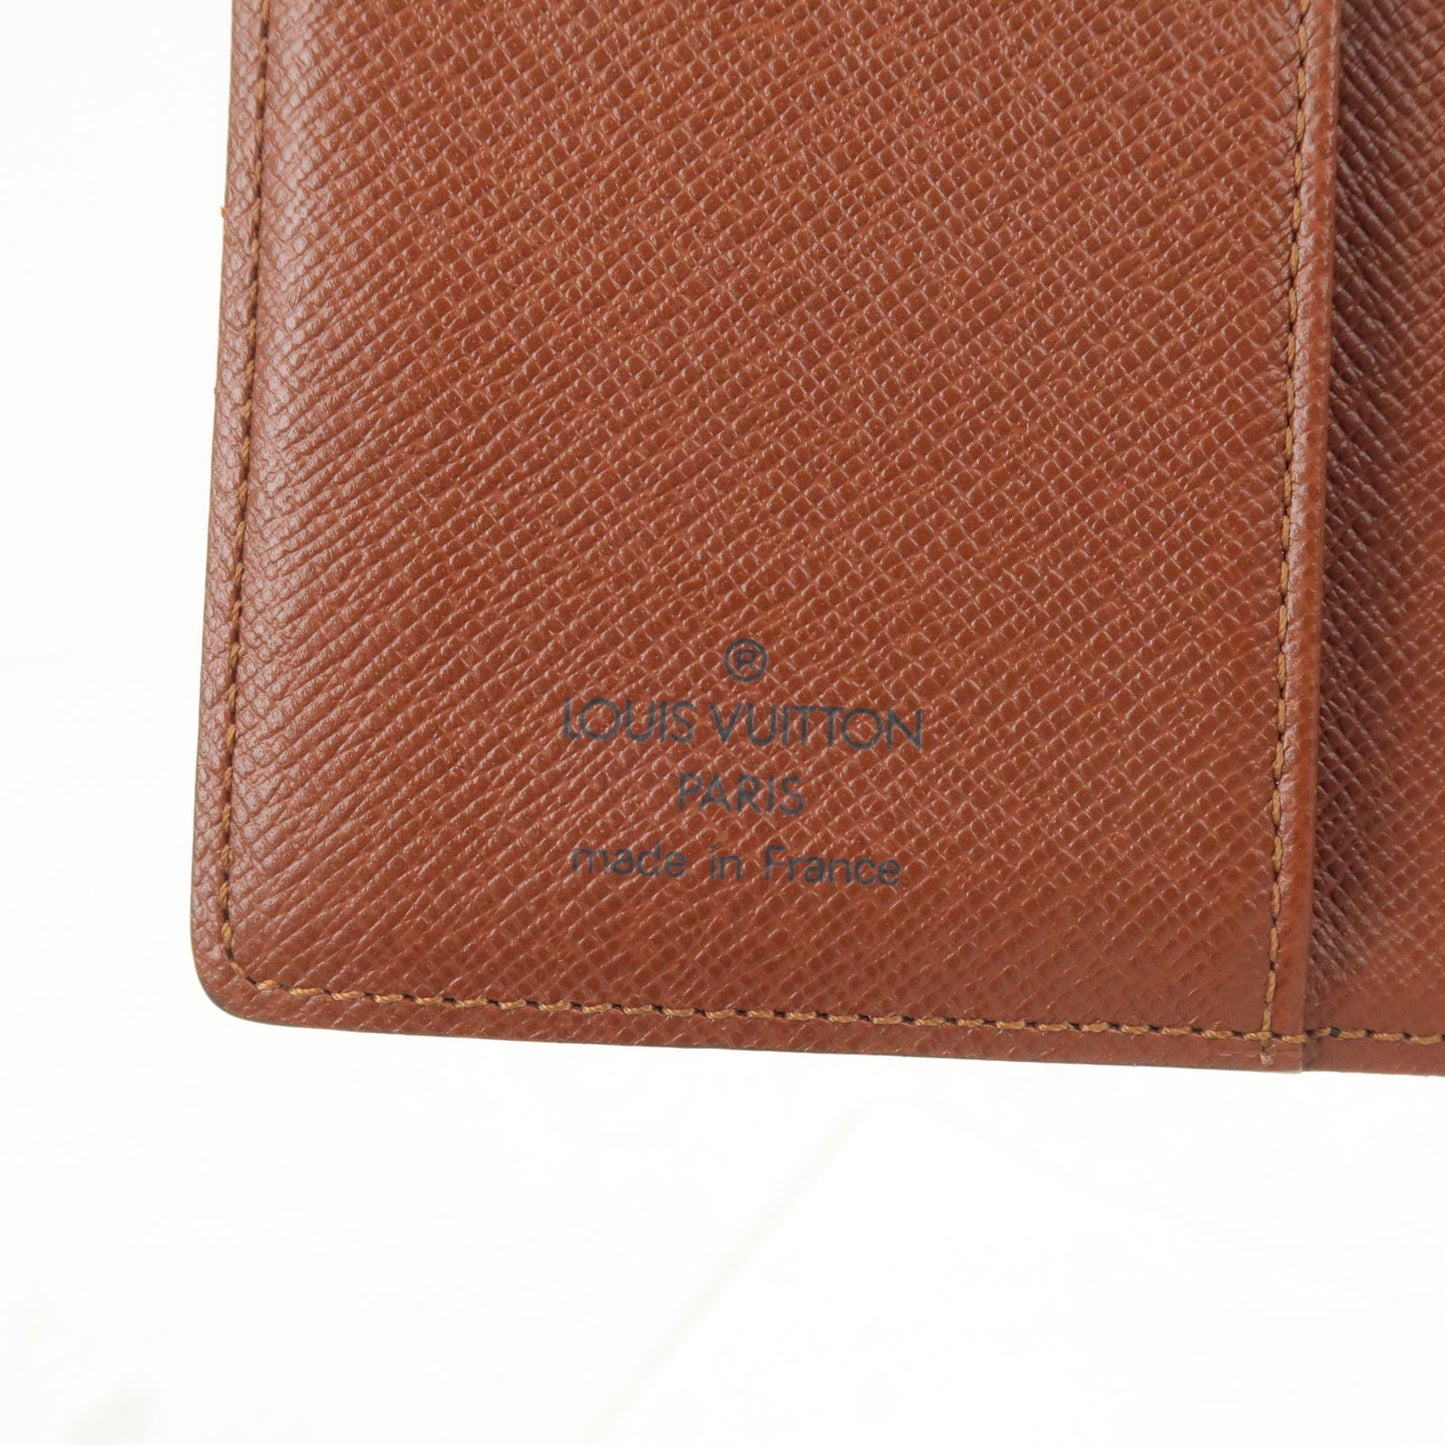 Louis Vuitton Monogram Agenda PM Planner Cover R20005